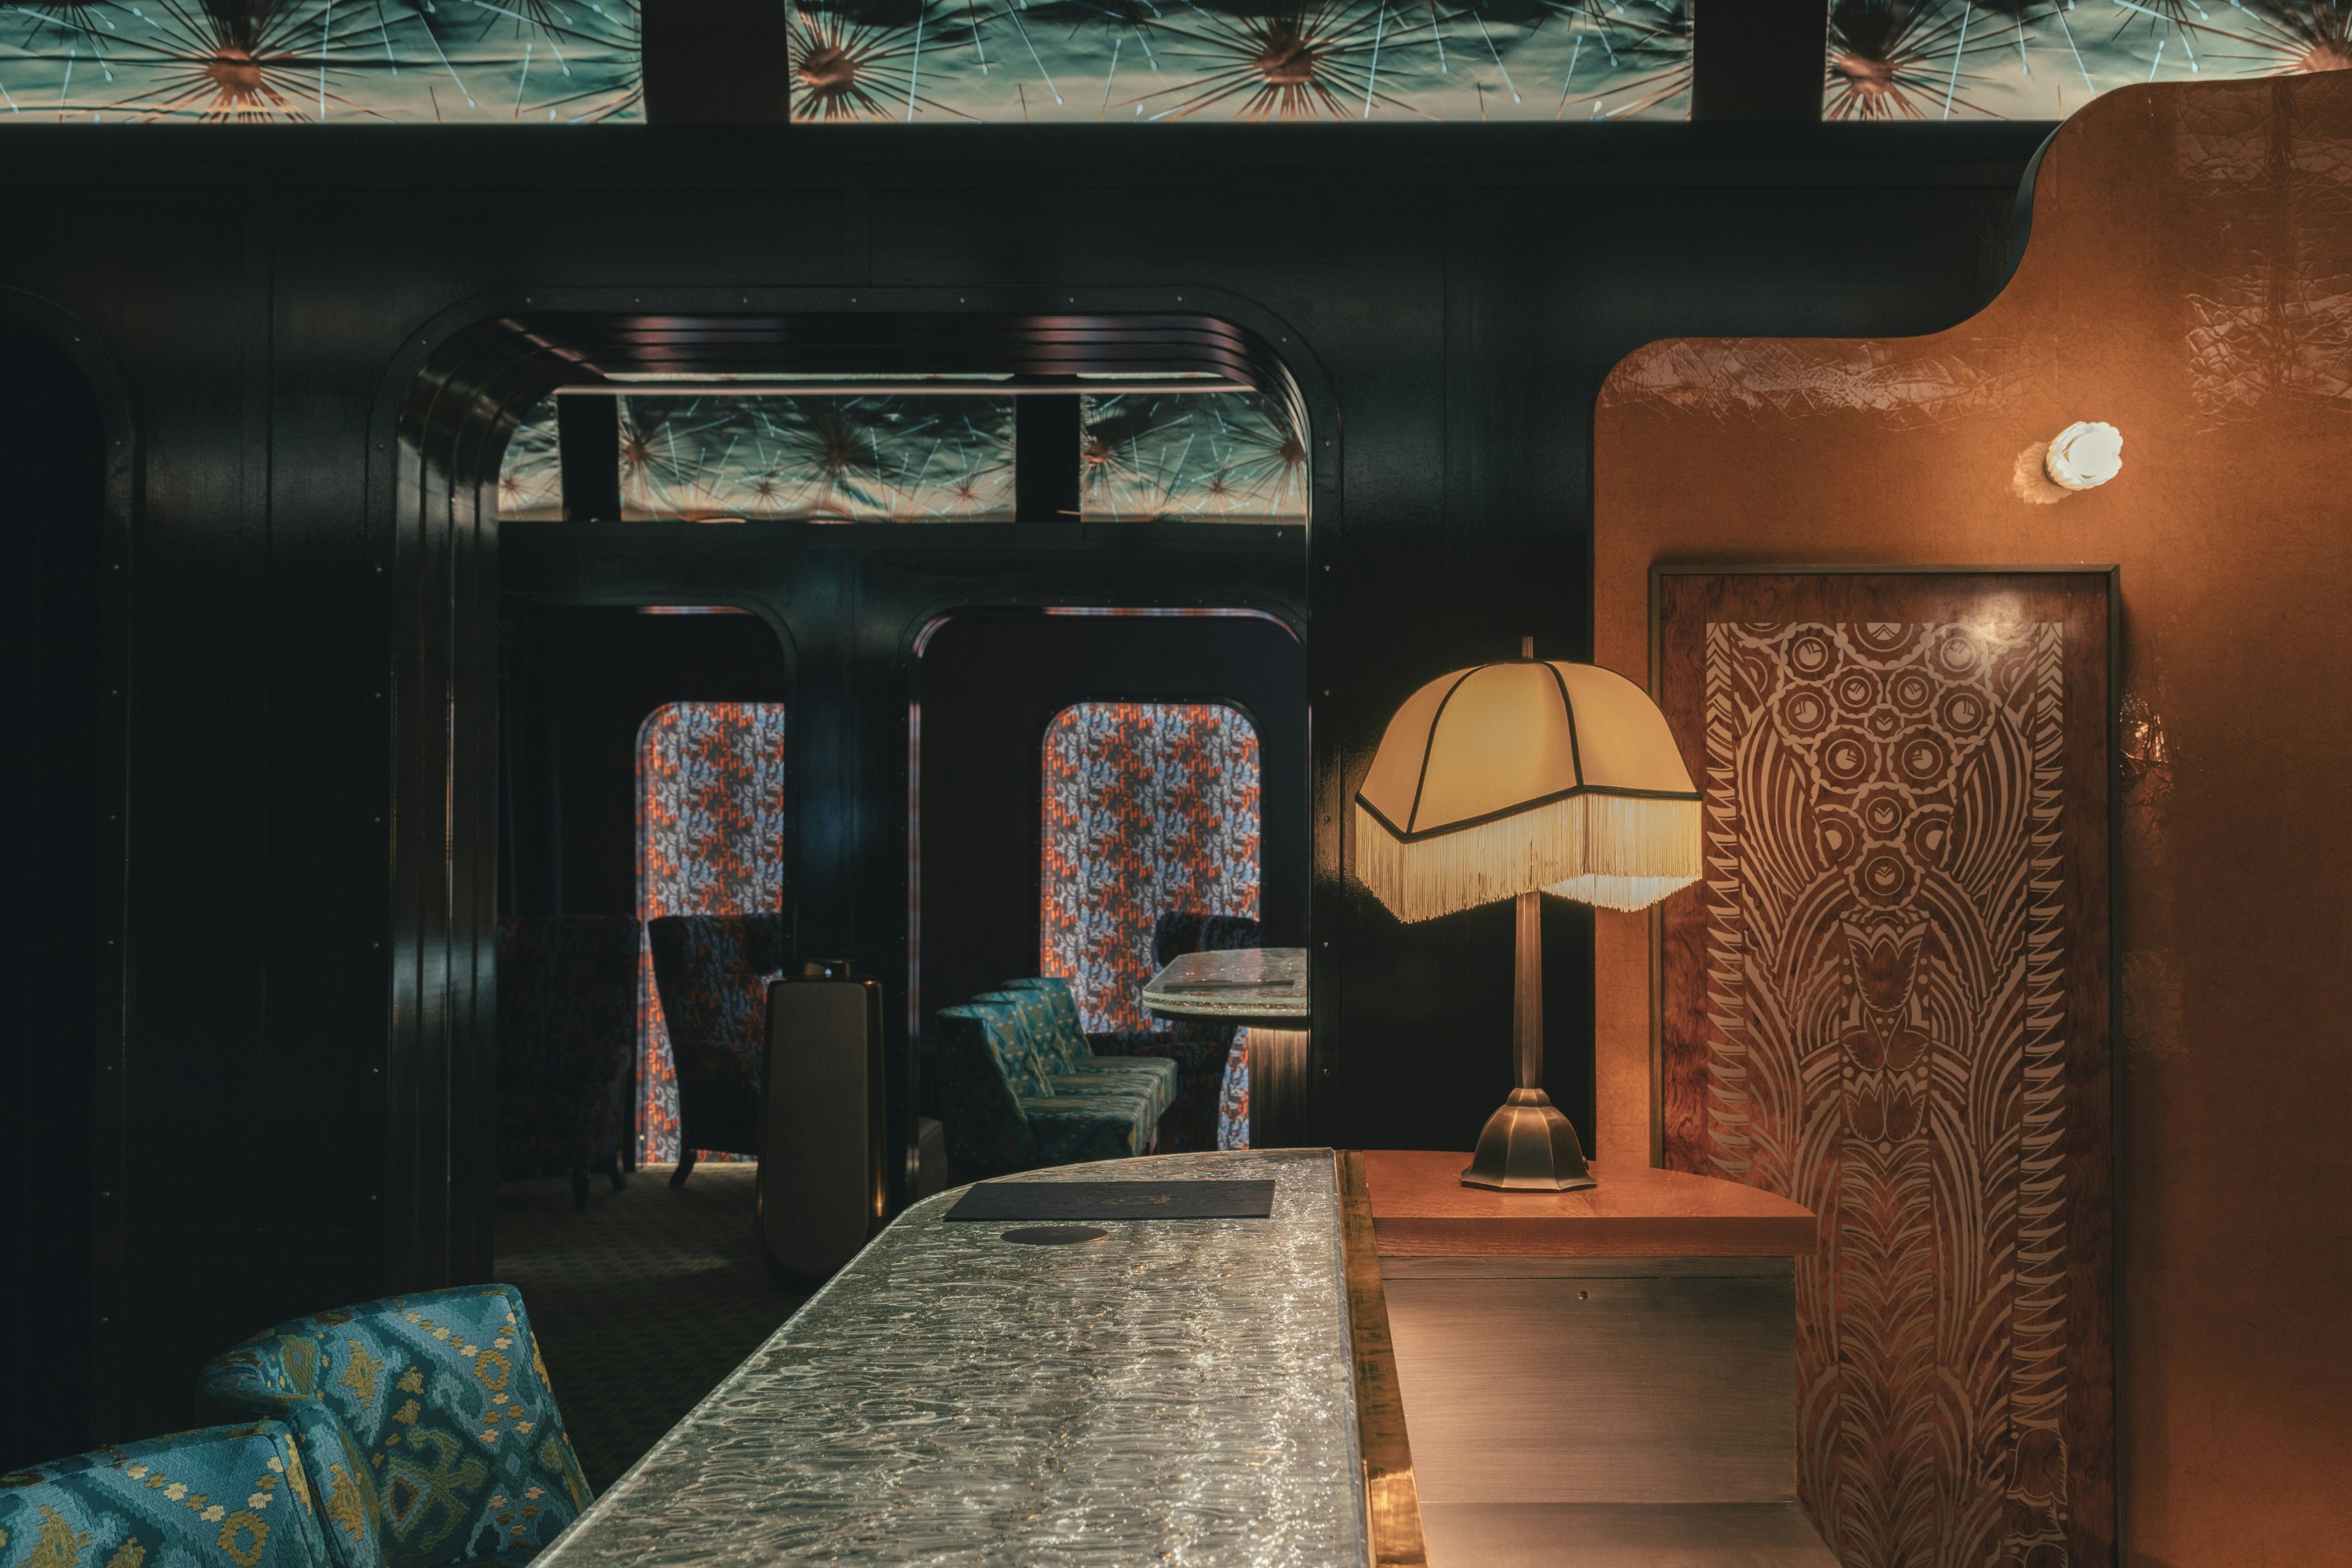 Orient Express Wagon Bar.jpg